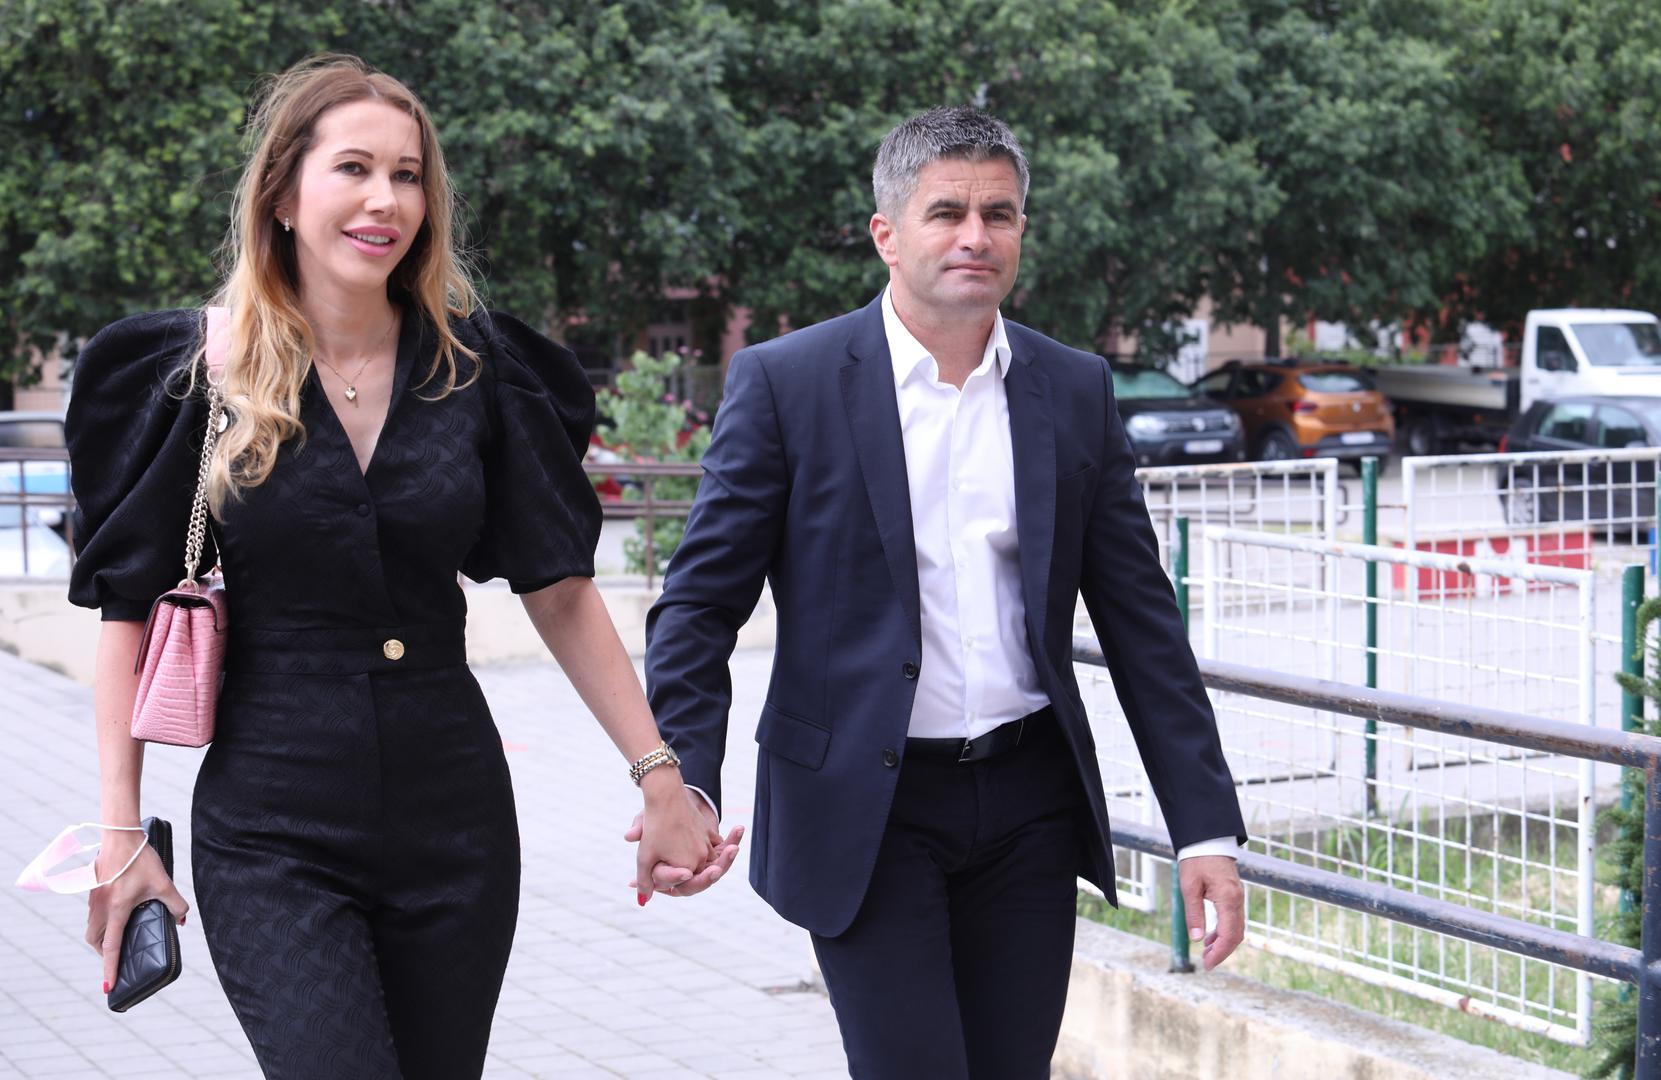 30.05.2021., Split - Kandidat za splitskog gradonacelnika Vice Mihanovic na glasovanje je stigao u drustvu supruge Anite
Photo: Ivo Cagalj/PIXSELL